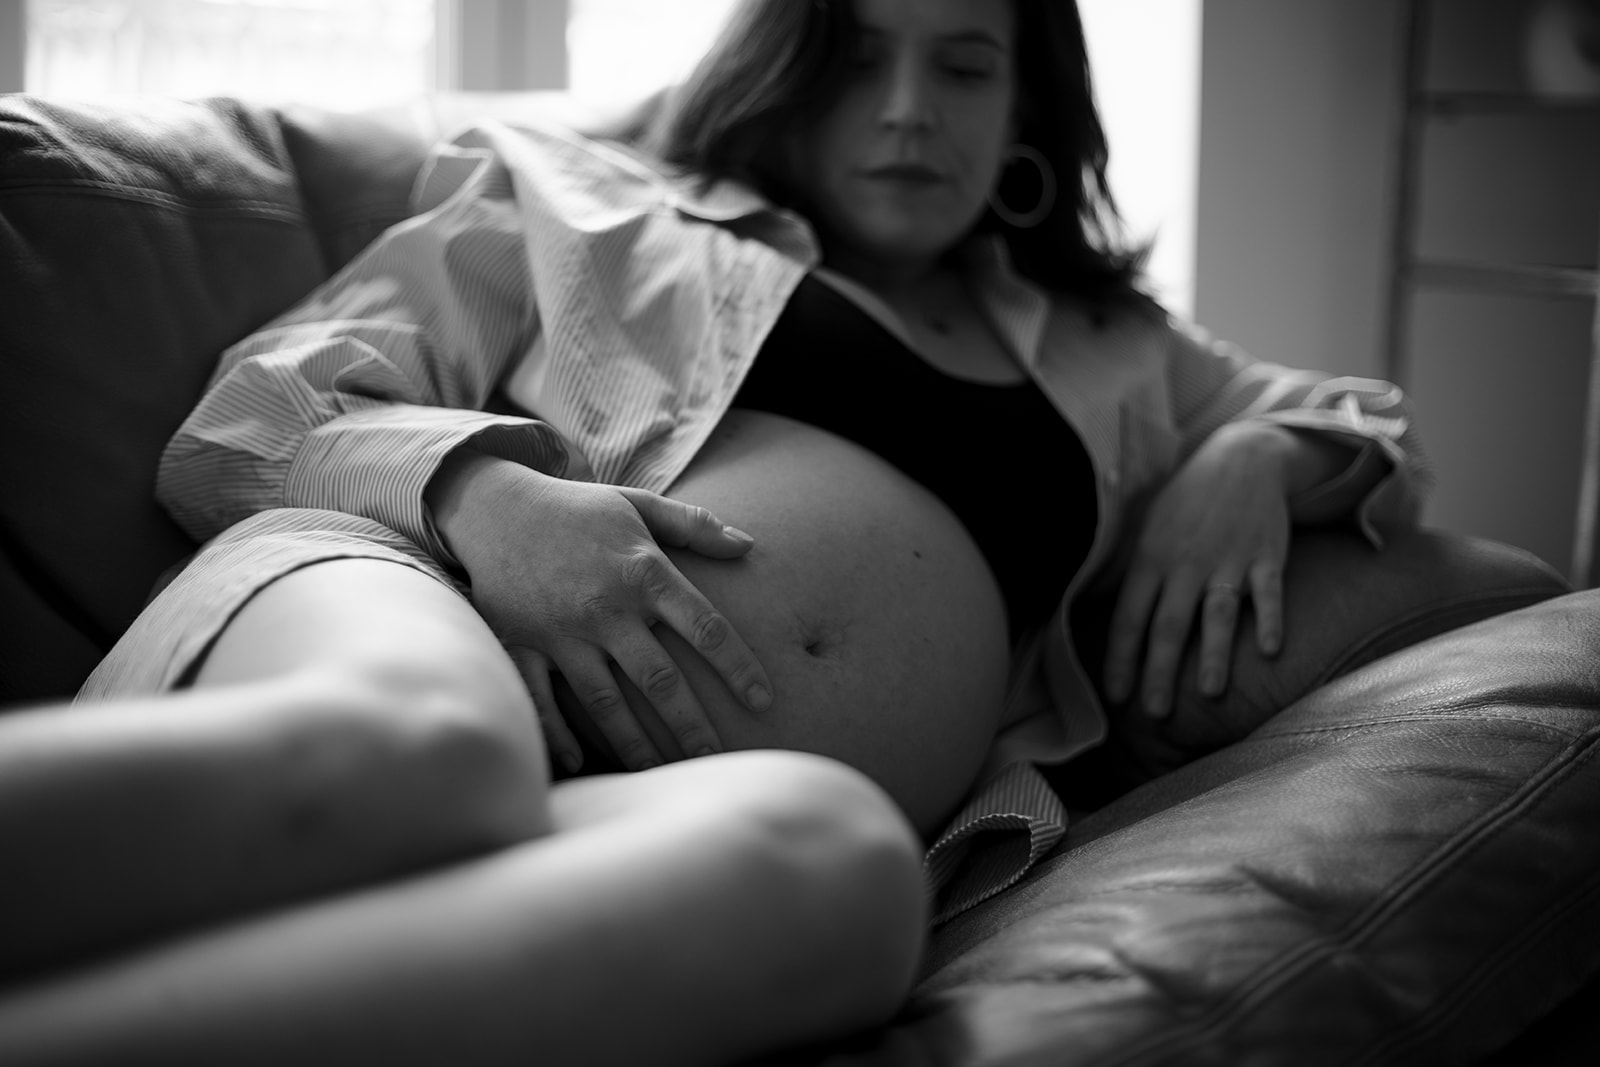 Séance photo d'une femme enceinte dans son domicile à Lyon, en lingerie, photo en noir et blanc.